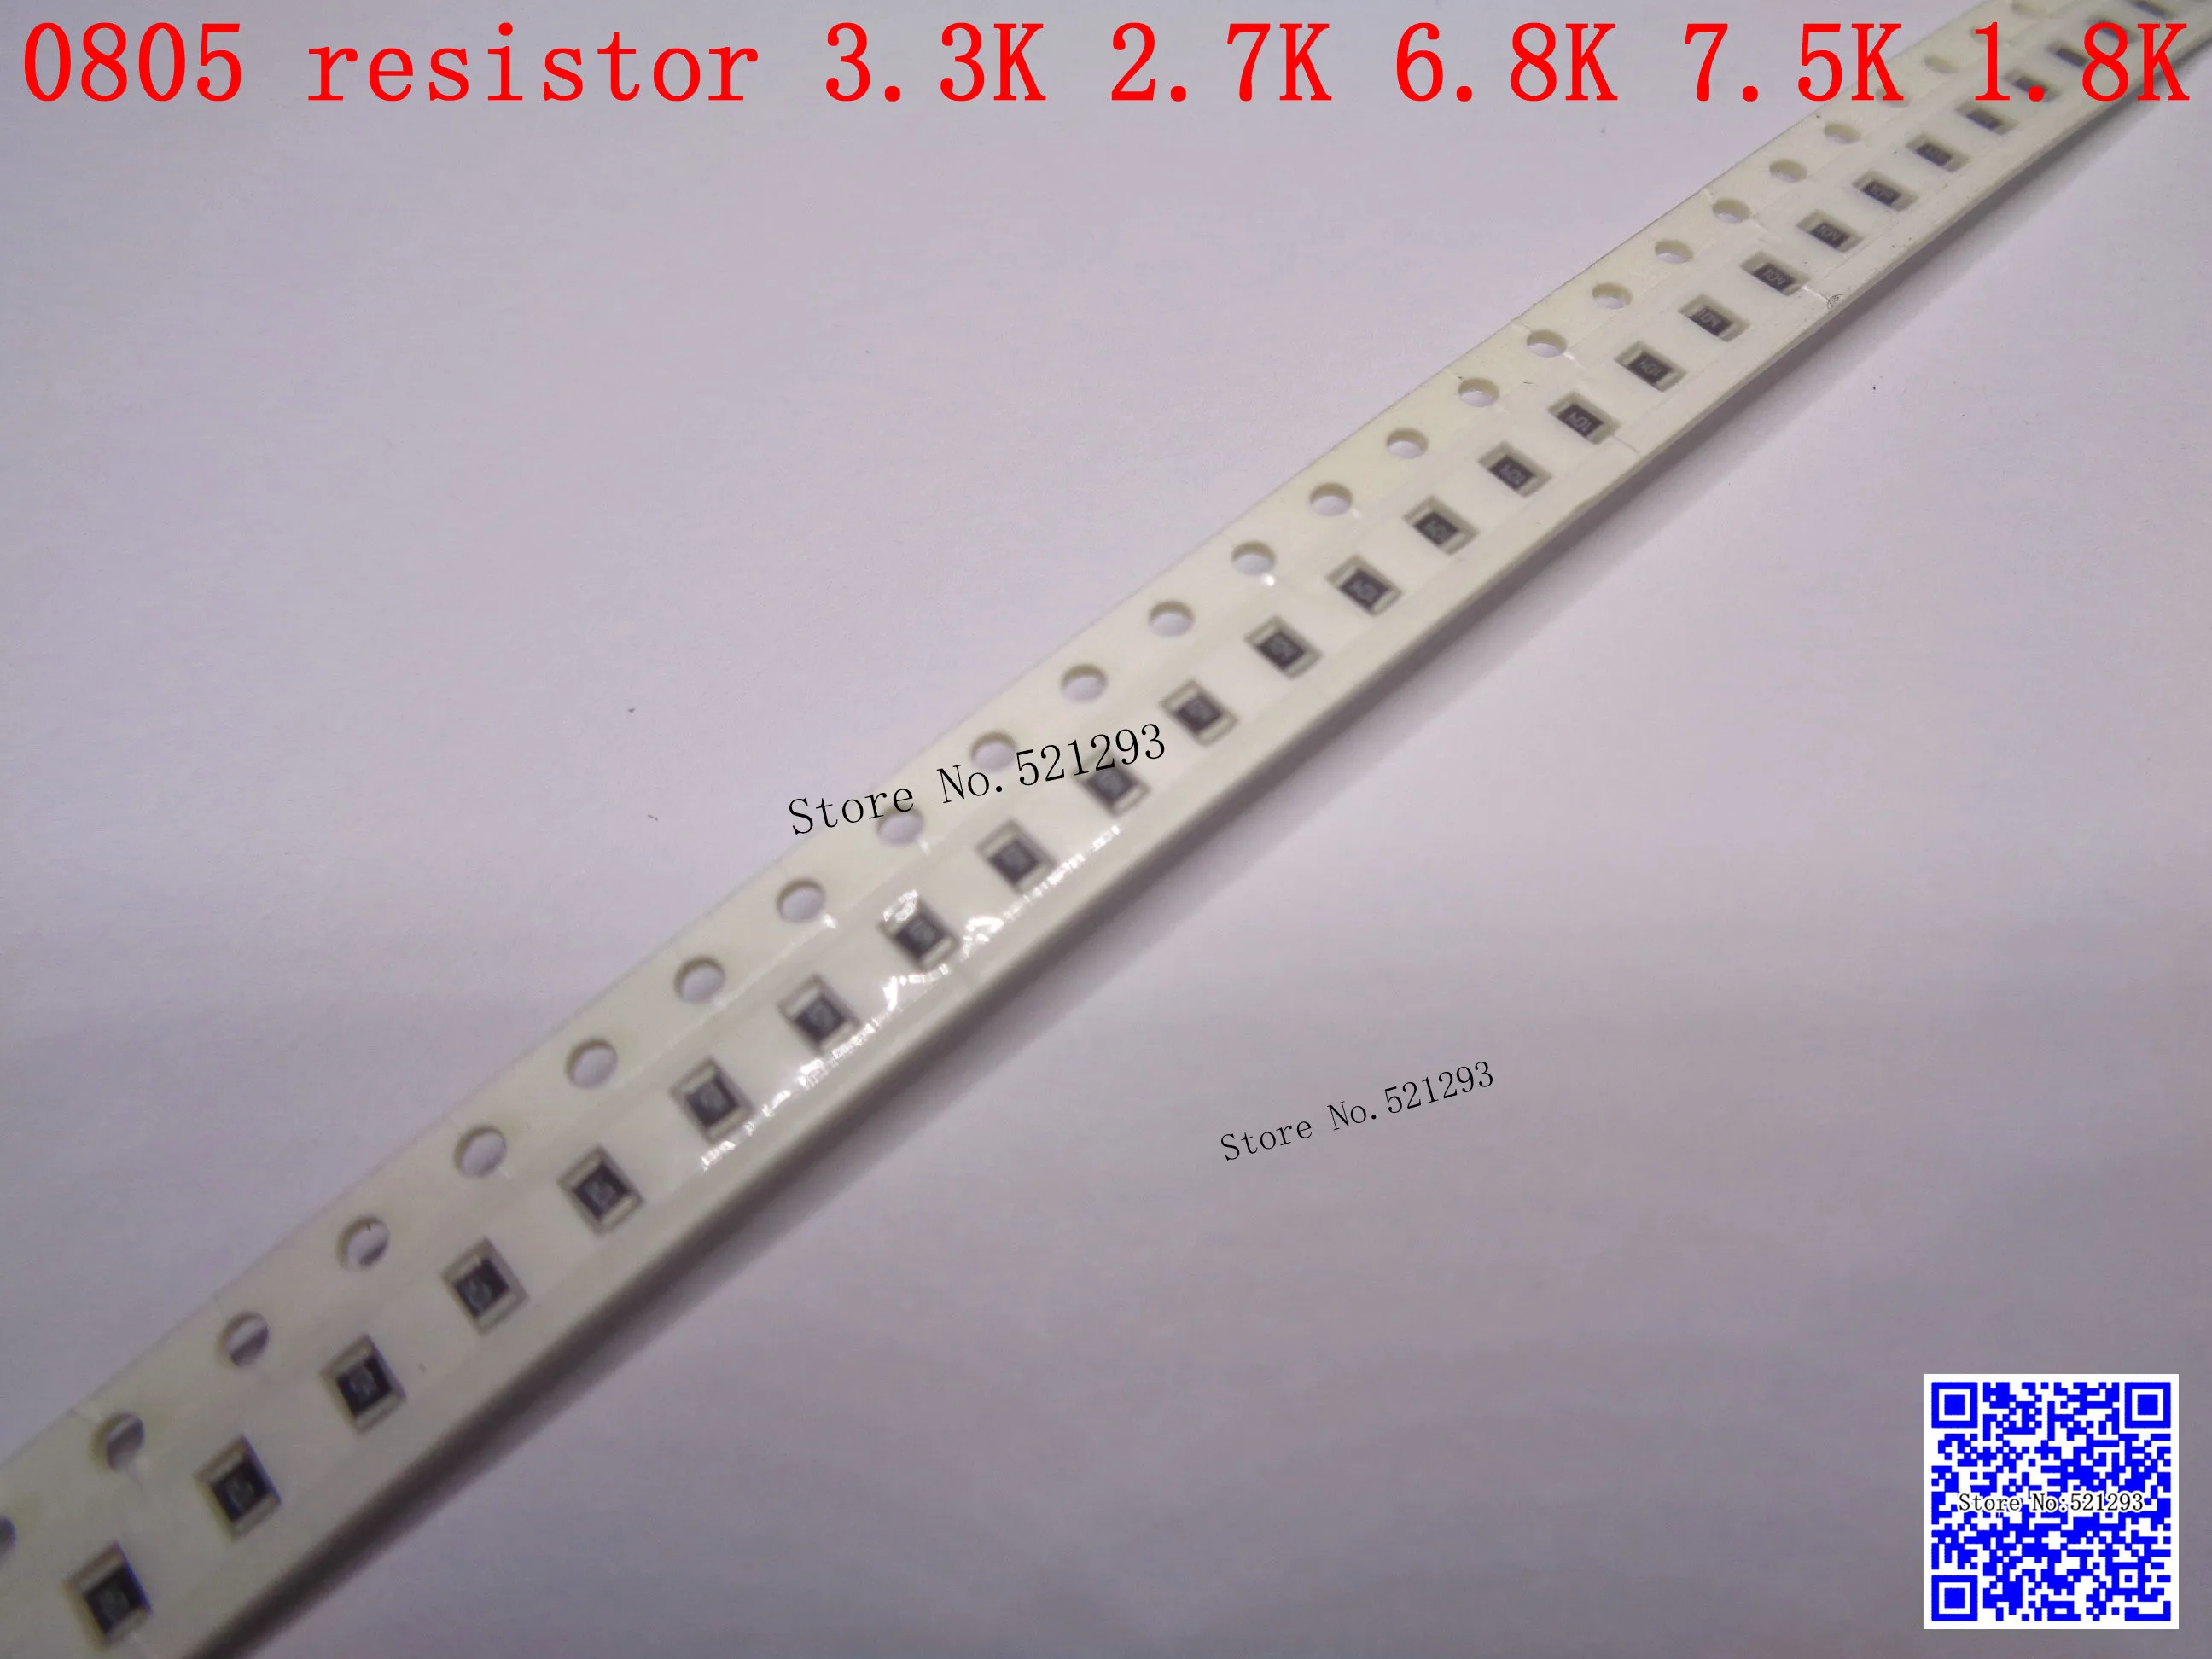 0805 F SMD резистора 1/8 Вт 3,3 К 2,7 К 6,8 К 7,5 К 1,8 К Ом 1% 2012 чип резистор 500 шт./лот